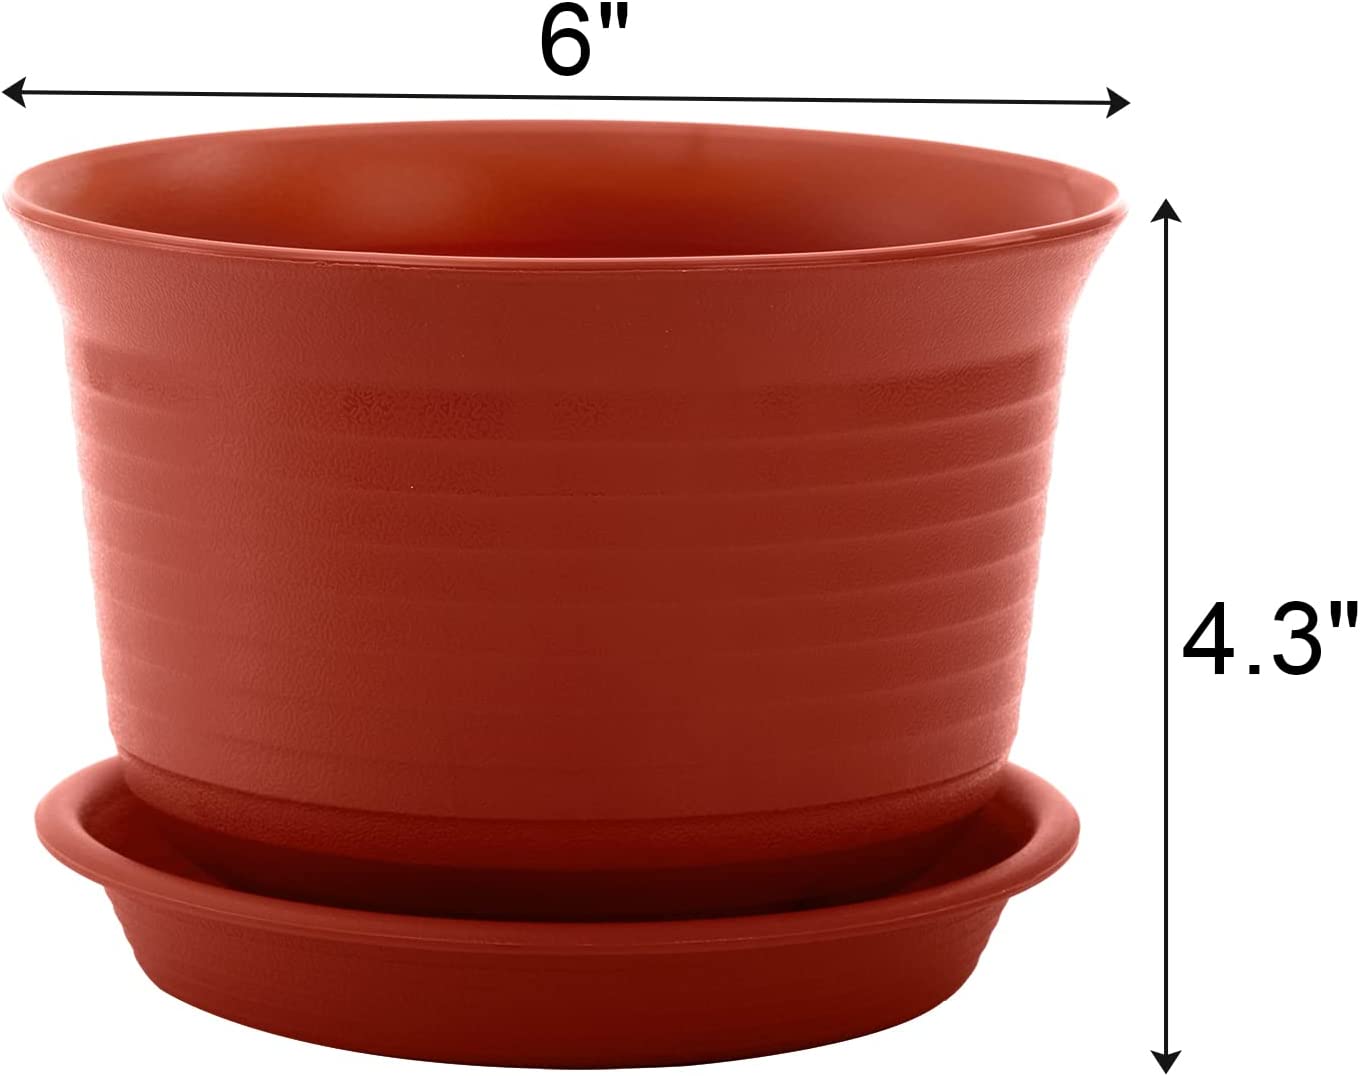 Elsjoy Set of 16 Plastic Planter Pots with Drainage Saucer, 6 Inch Flowers Pot Decorative Plant Pots for Succulents, House Plants, Garden, 4 Colors